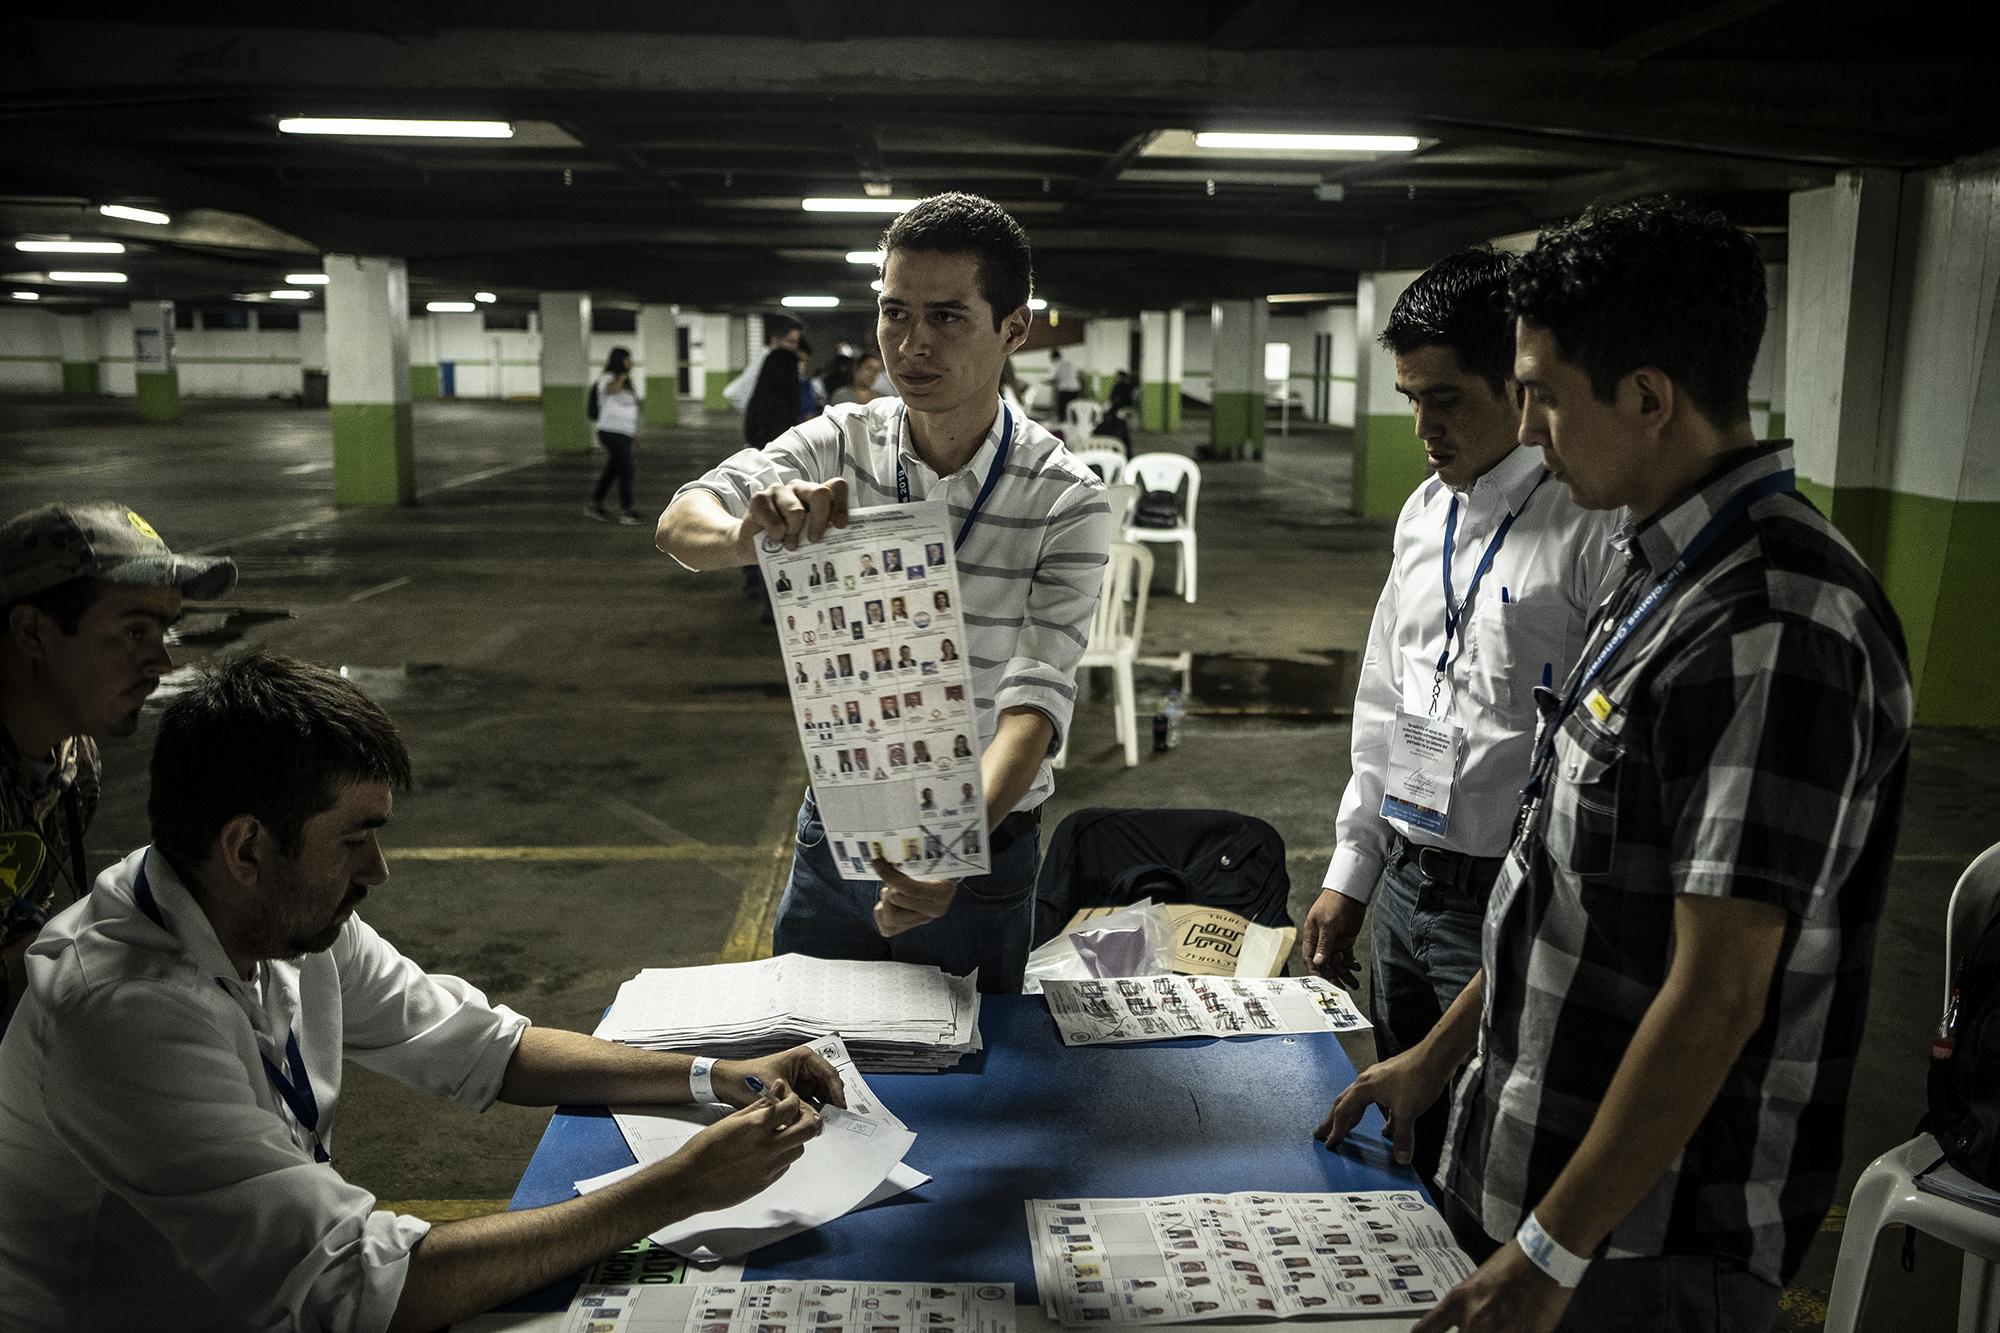 286 personas de 400 votaron en el centro del Parqueo Plaza Central Ala Sur de la Ciudad de Guatemala. Según los empleados del TSE, un total de 5,600 personas (un 64 %) había llegado a votar a ese lugar. En todo el país, solo el 53 % de votantes acudió a las urnas, siendo esta la elección con menos participación en los últimos años. 